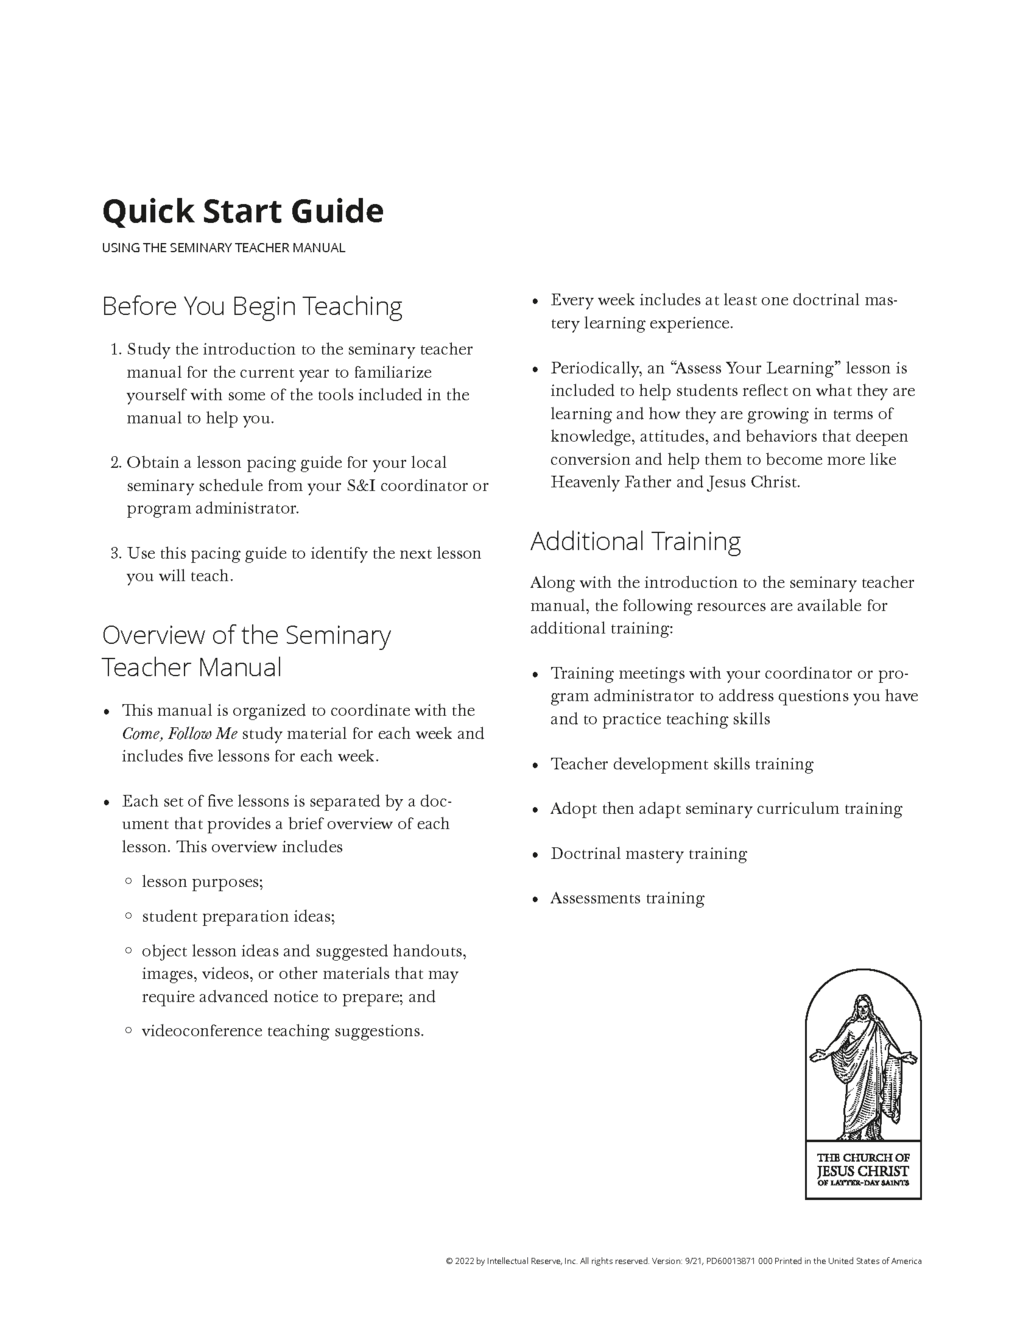 Quick Start Guide:  Curriculum Training